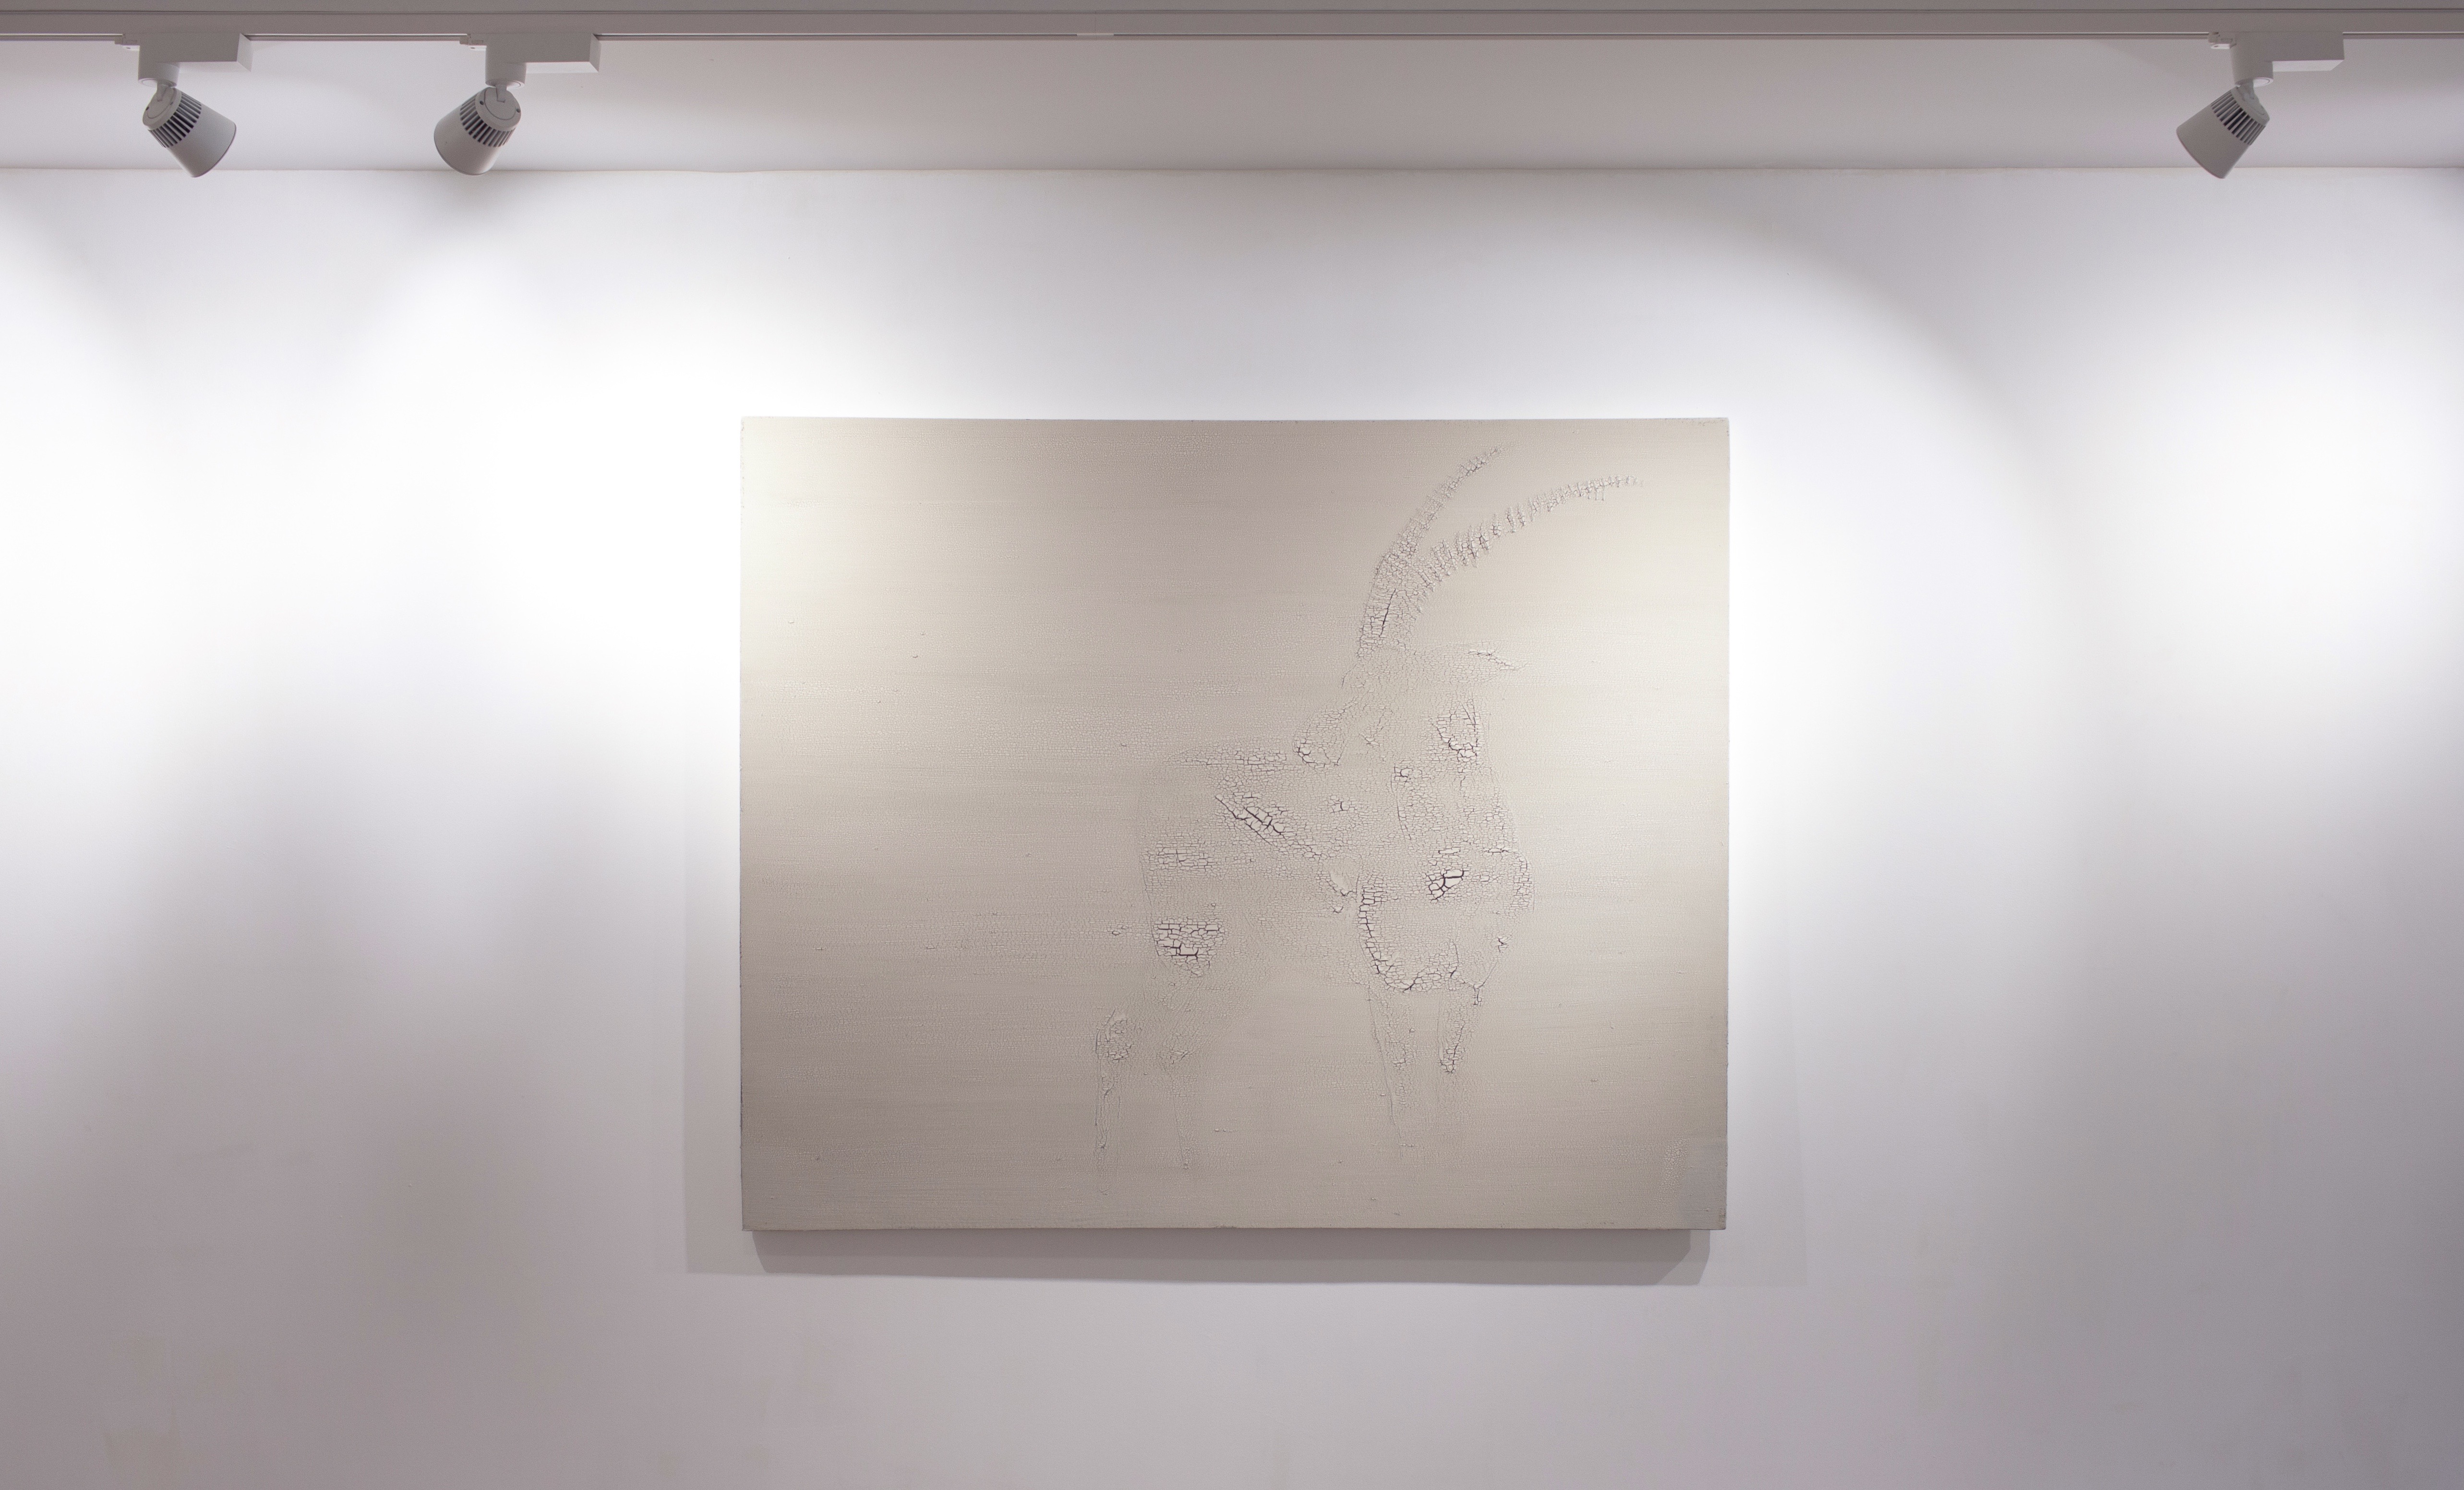 Être aux aguets ( Gazelle ), 2014, acrylique sur toile et techniques mixtes, 139 x 170 cm.